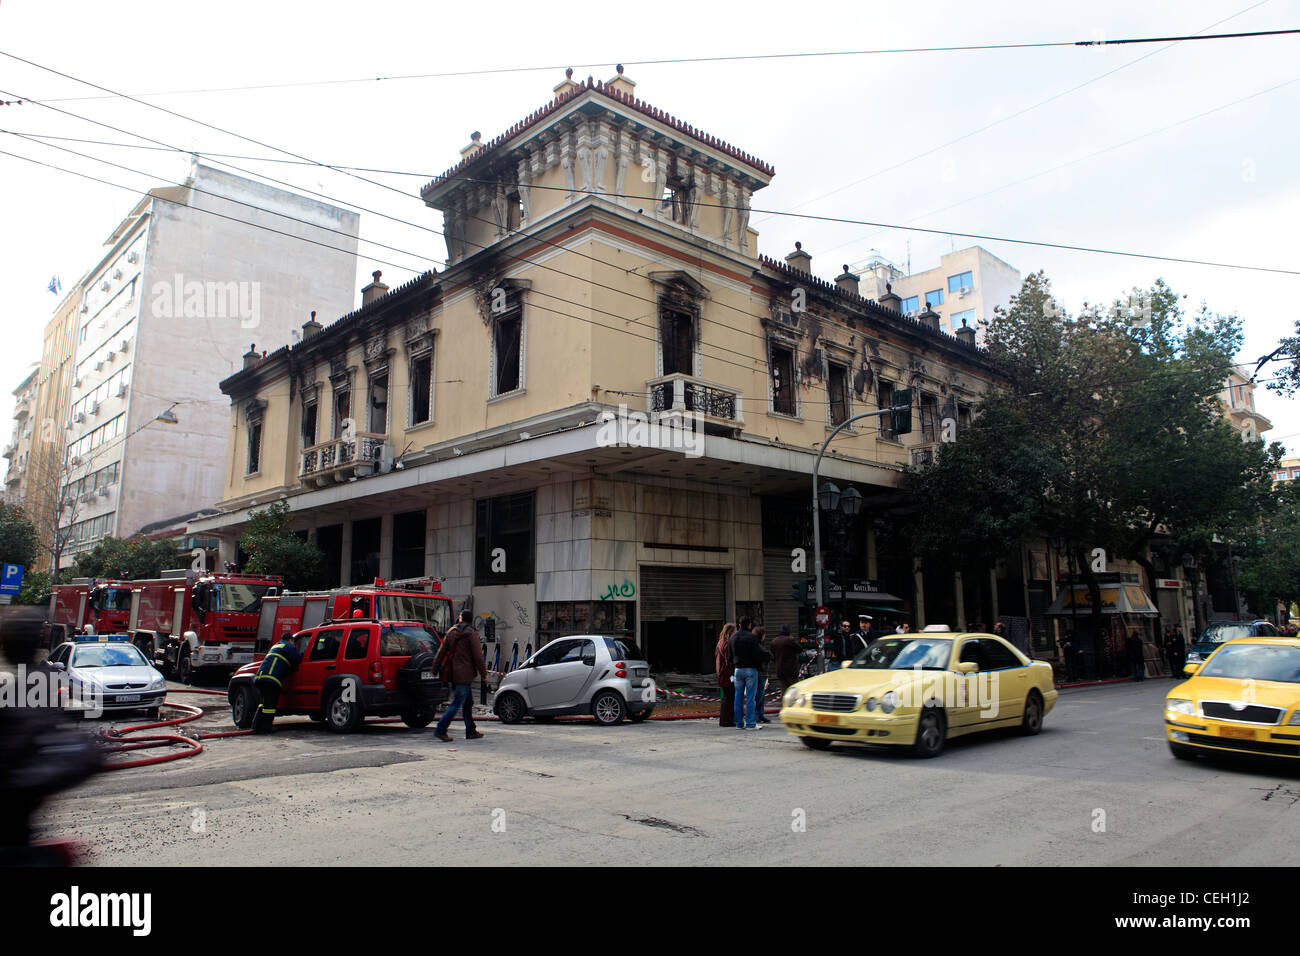 Grèce Athènes cinéma attikon stadiou vandalisé et incendié après les émeutes du 12 février Banque D'Images